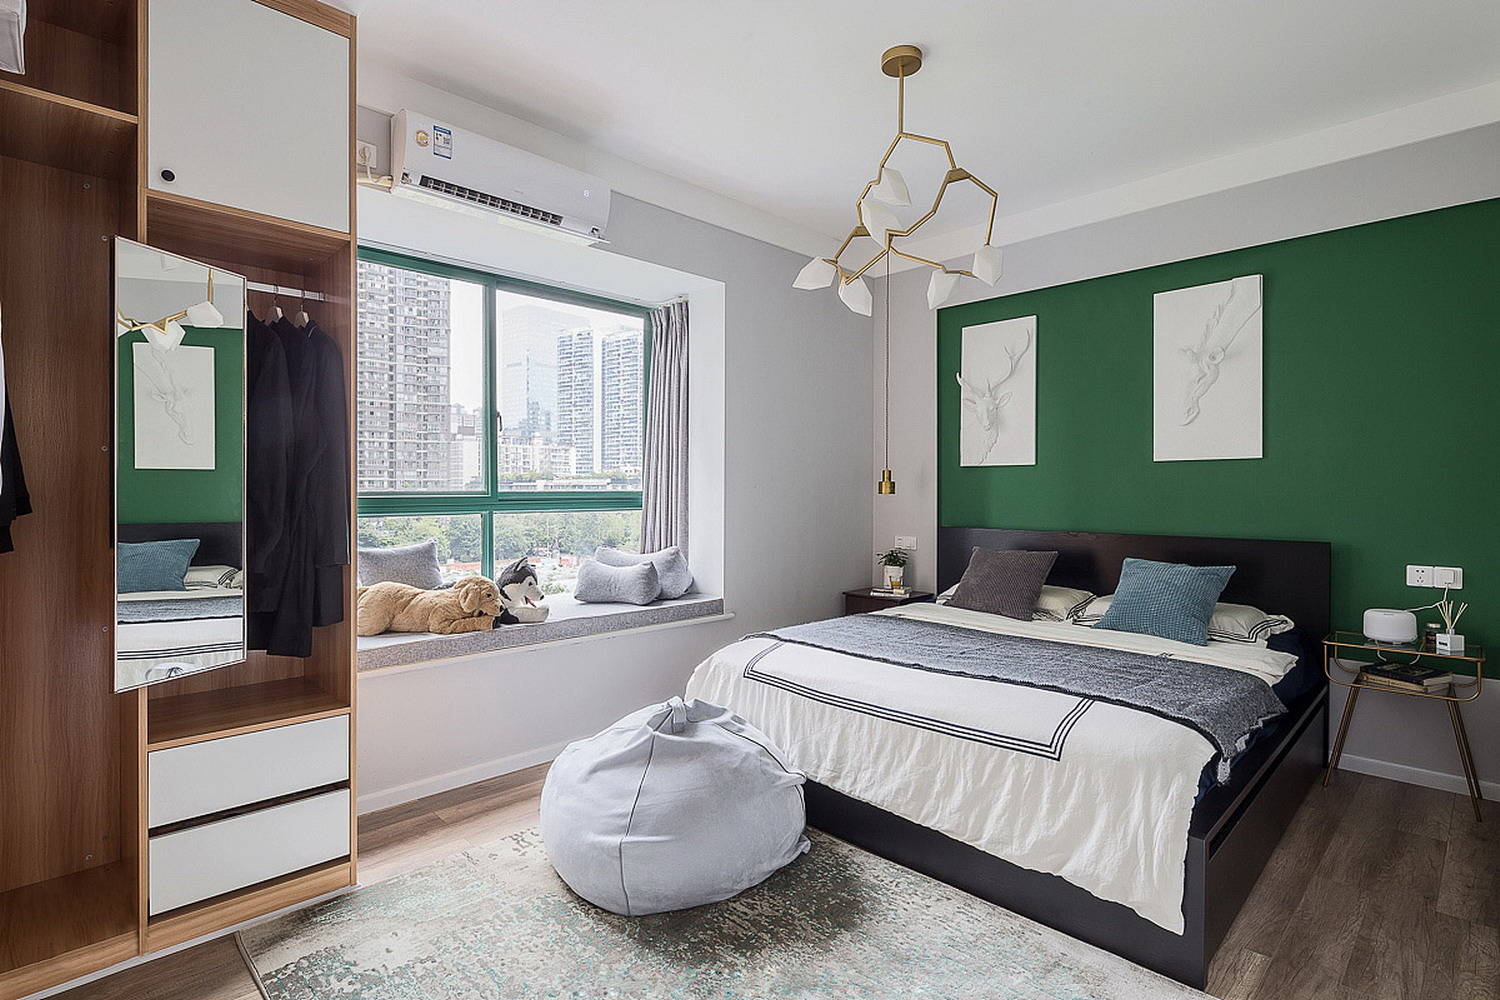 卧室-使用鲜艳的纯色为点缀搭配。整体空间给人感觉干净明朗~